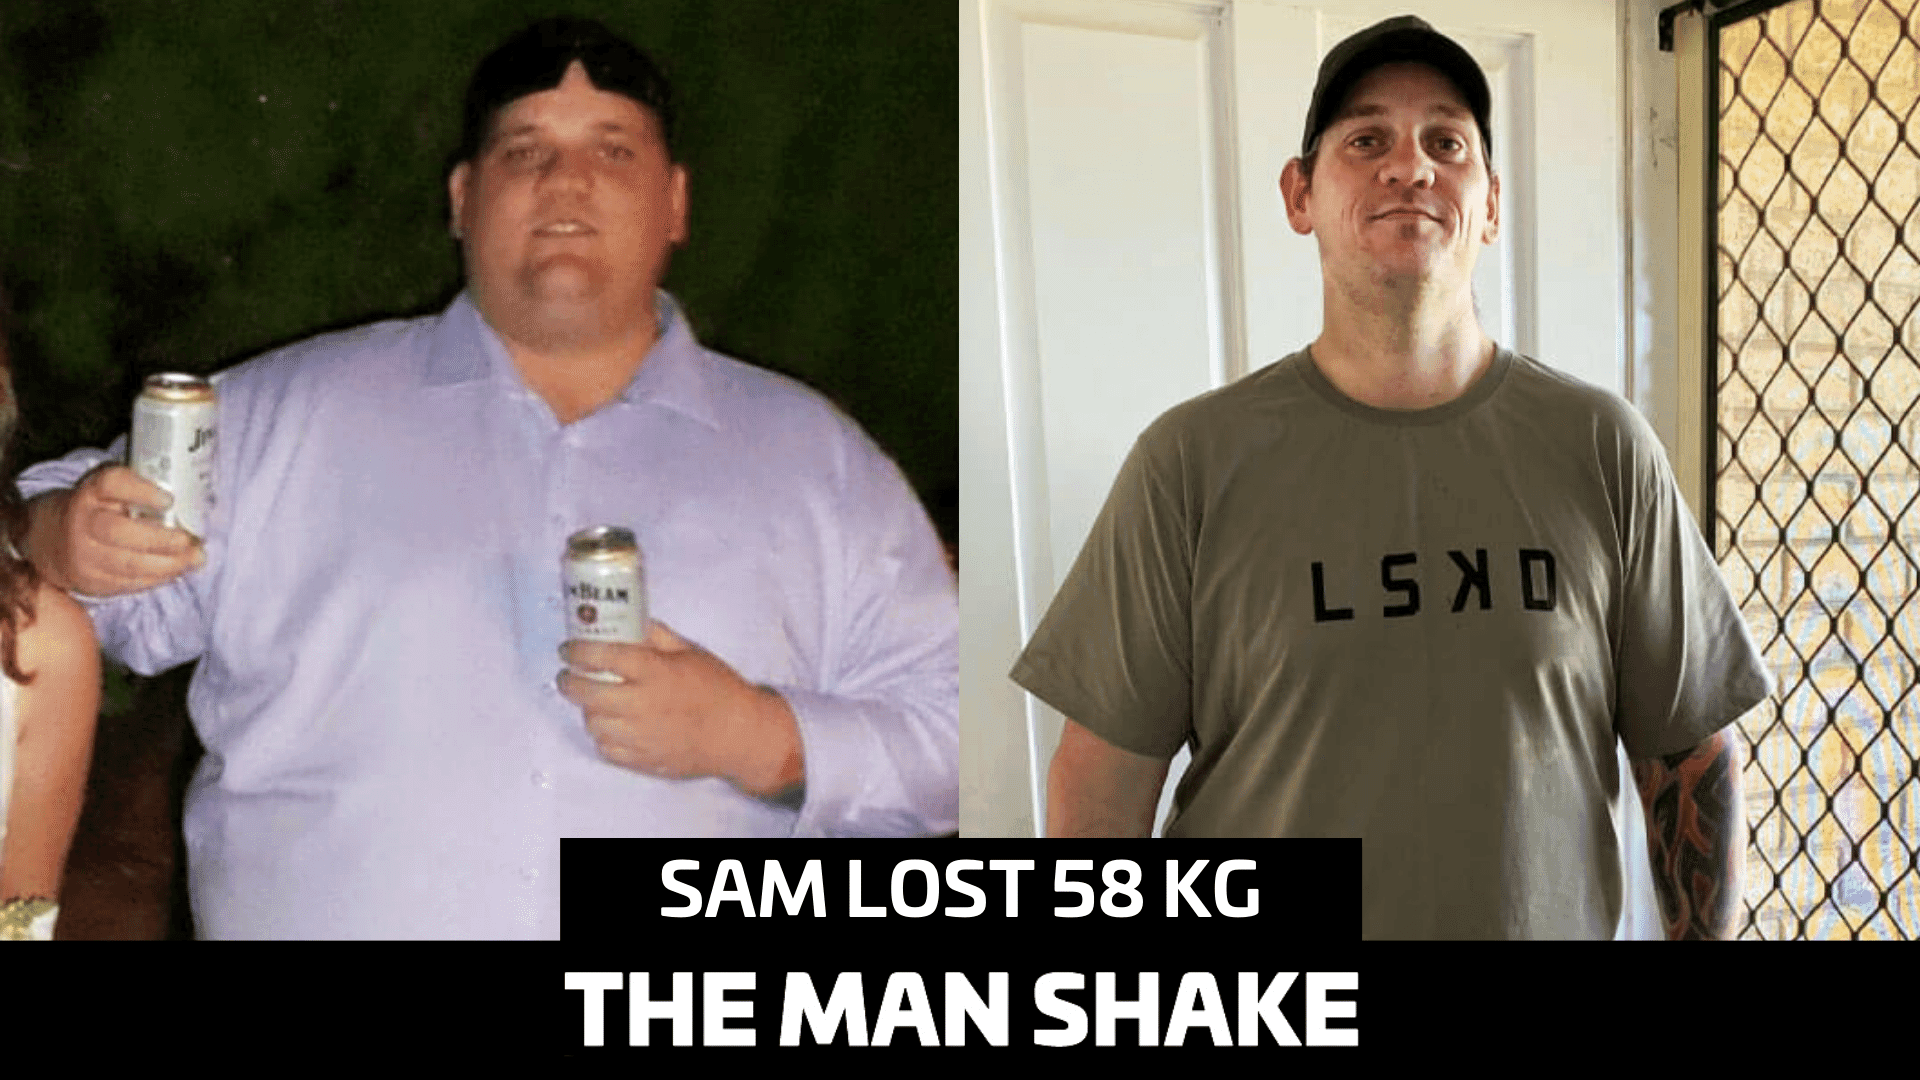 Sam lost 58kg after hitting rock bottom